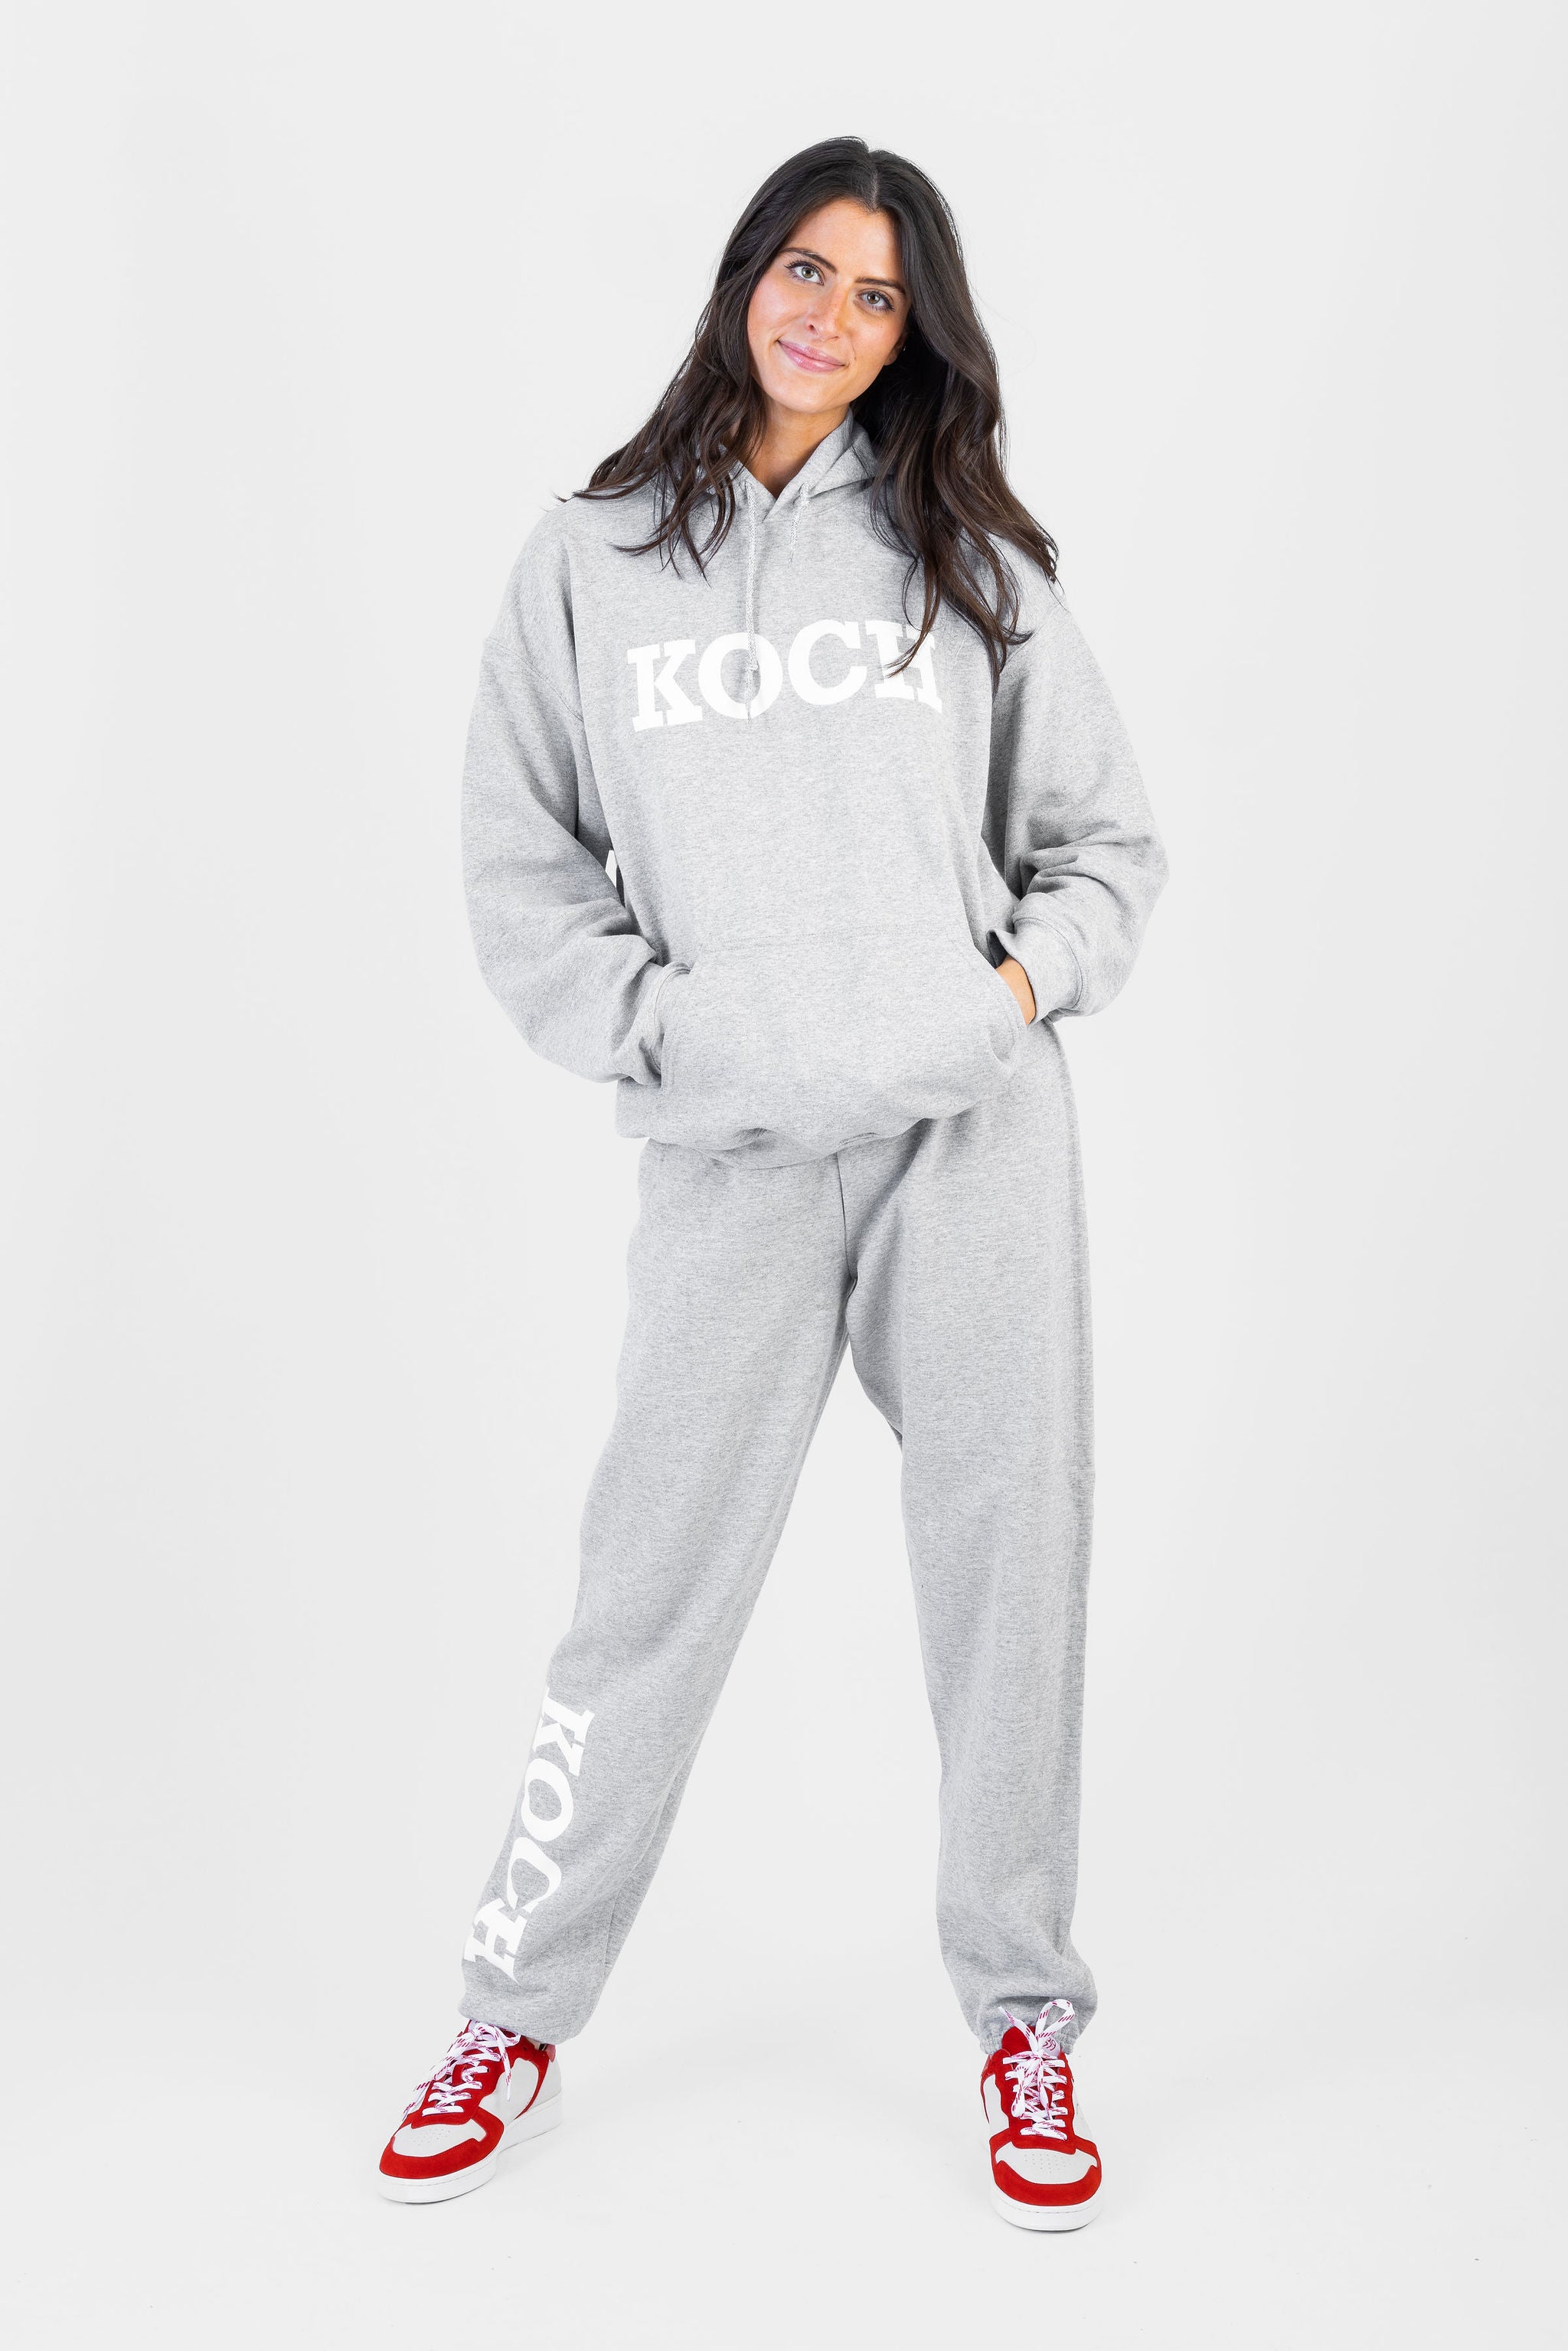 KOCH Sweatsuit Grey *Limited*Edition* – Shop KOCH